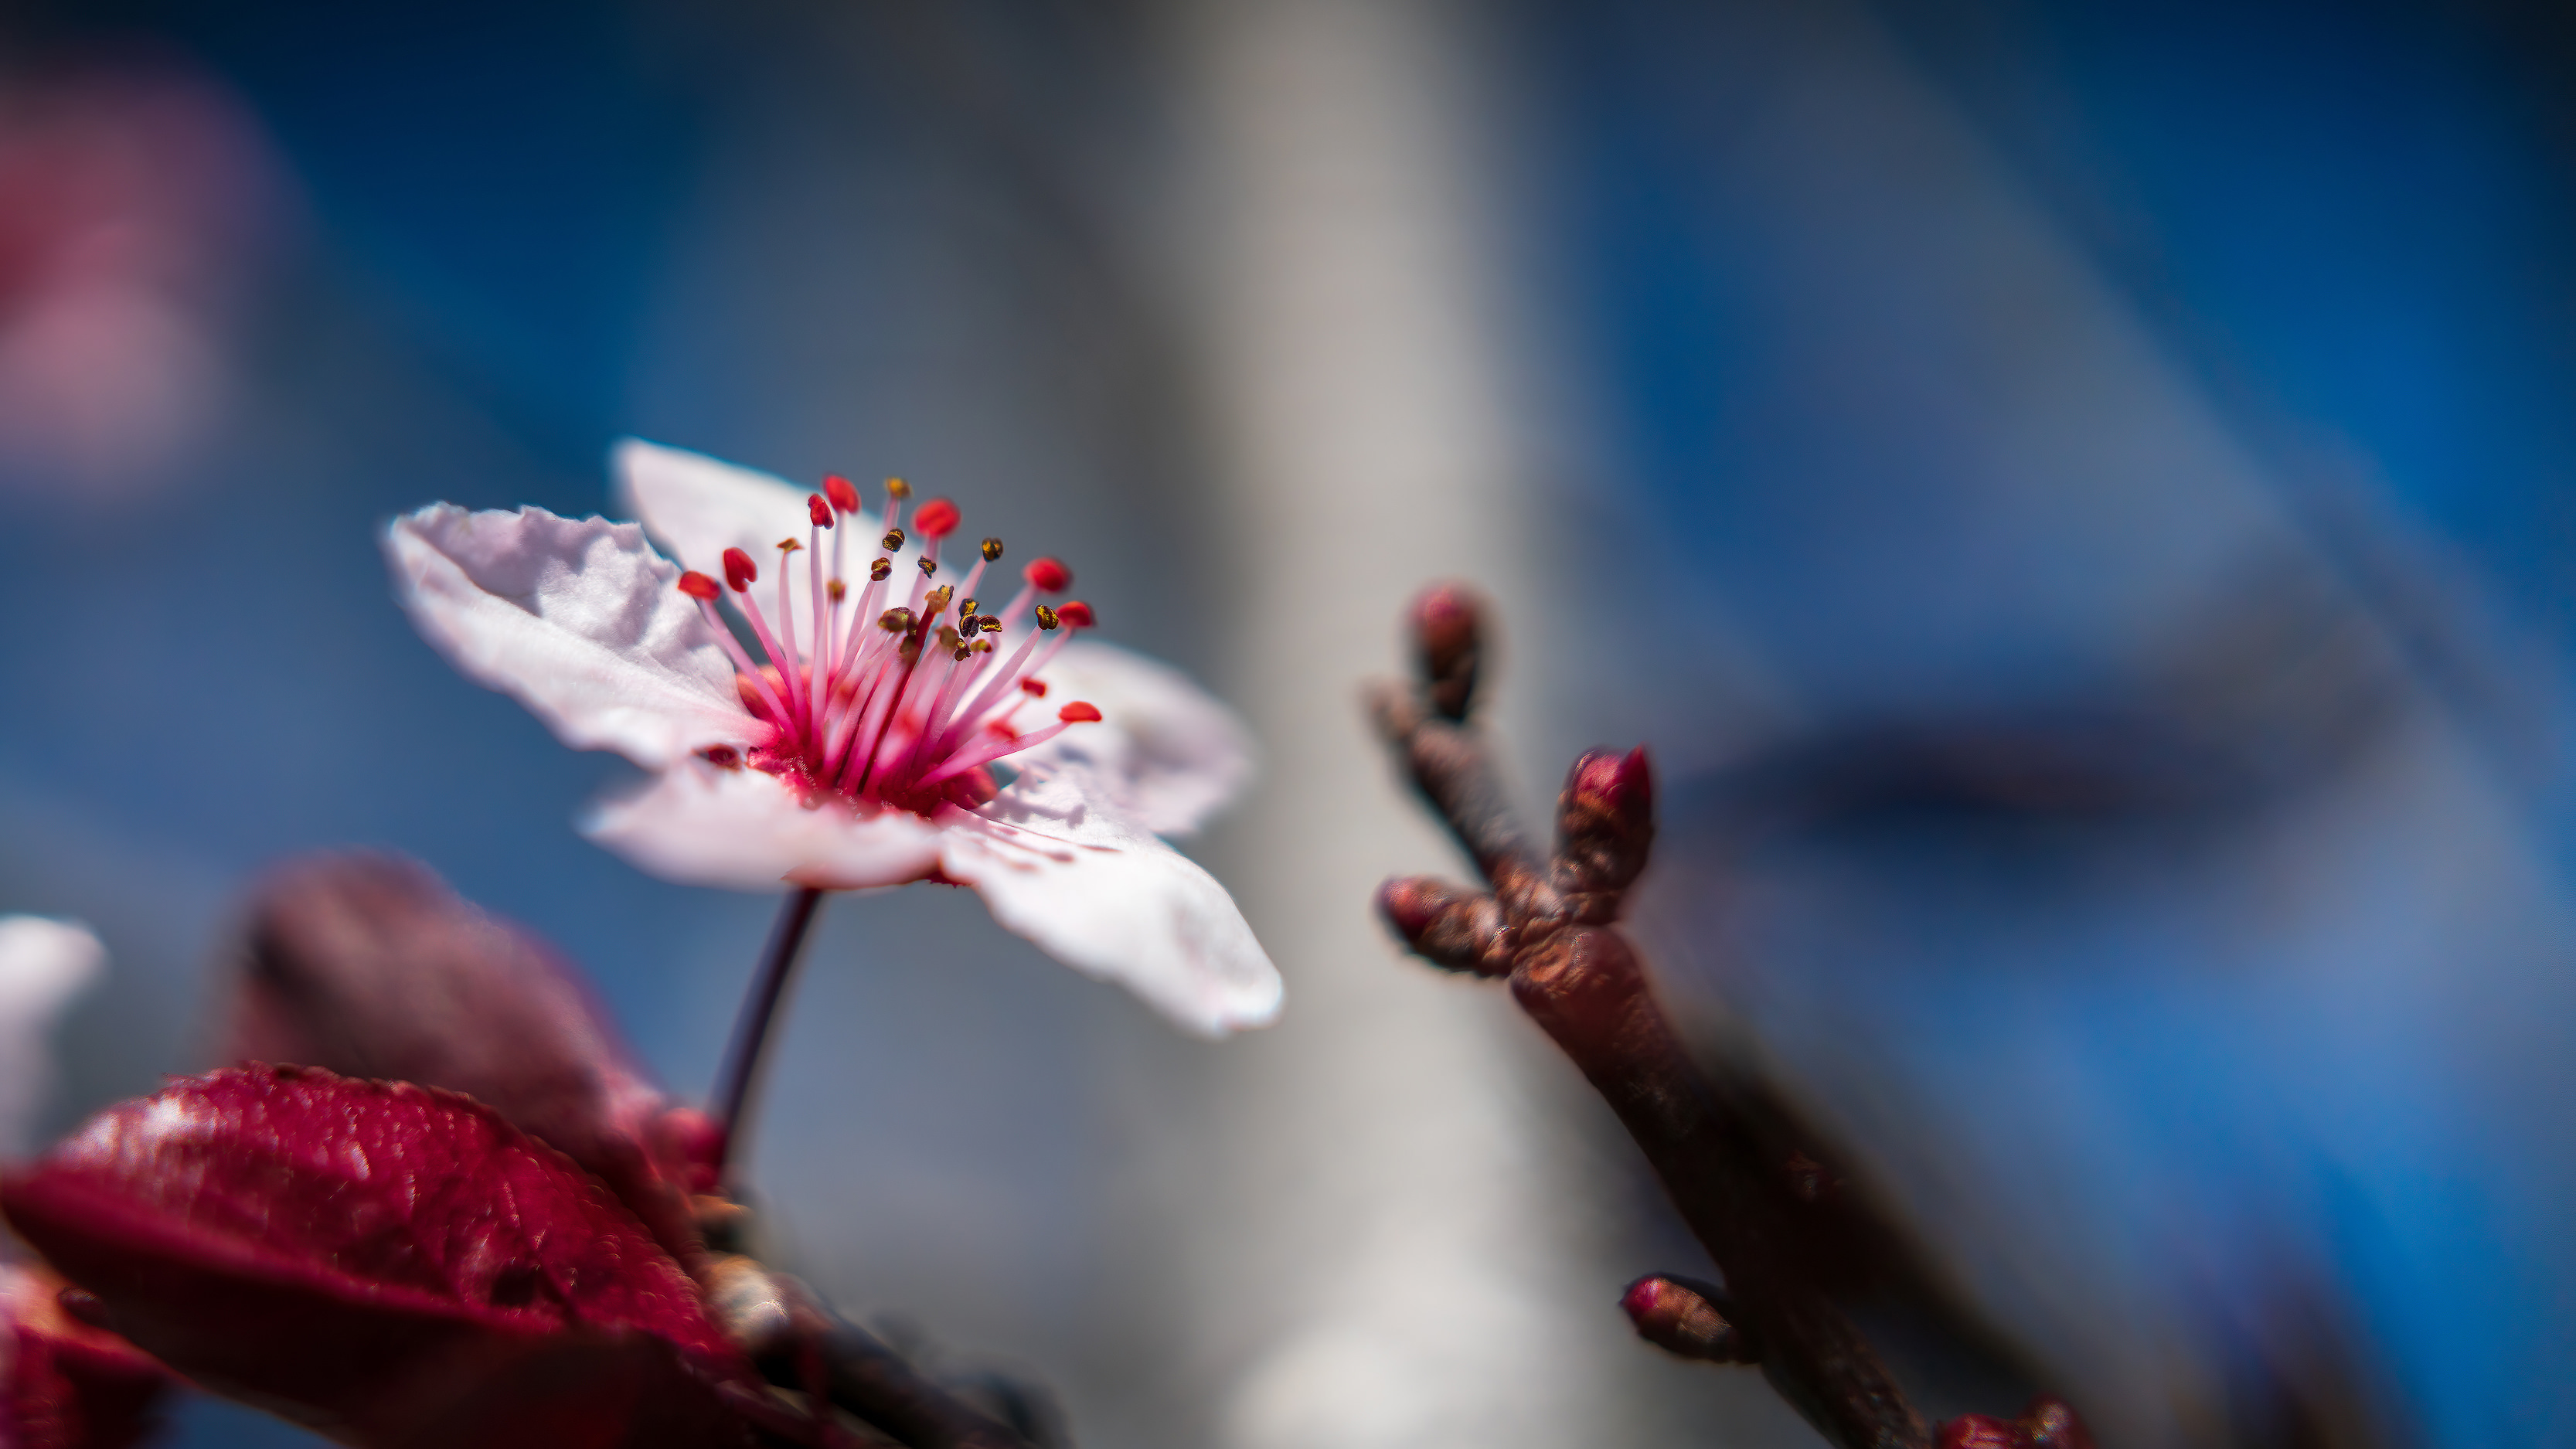 The Details - A Cherry Blossom